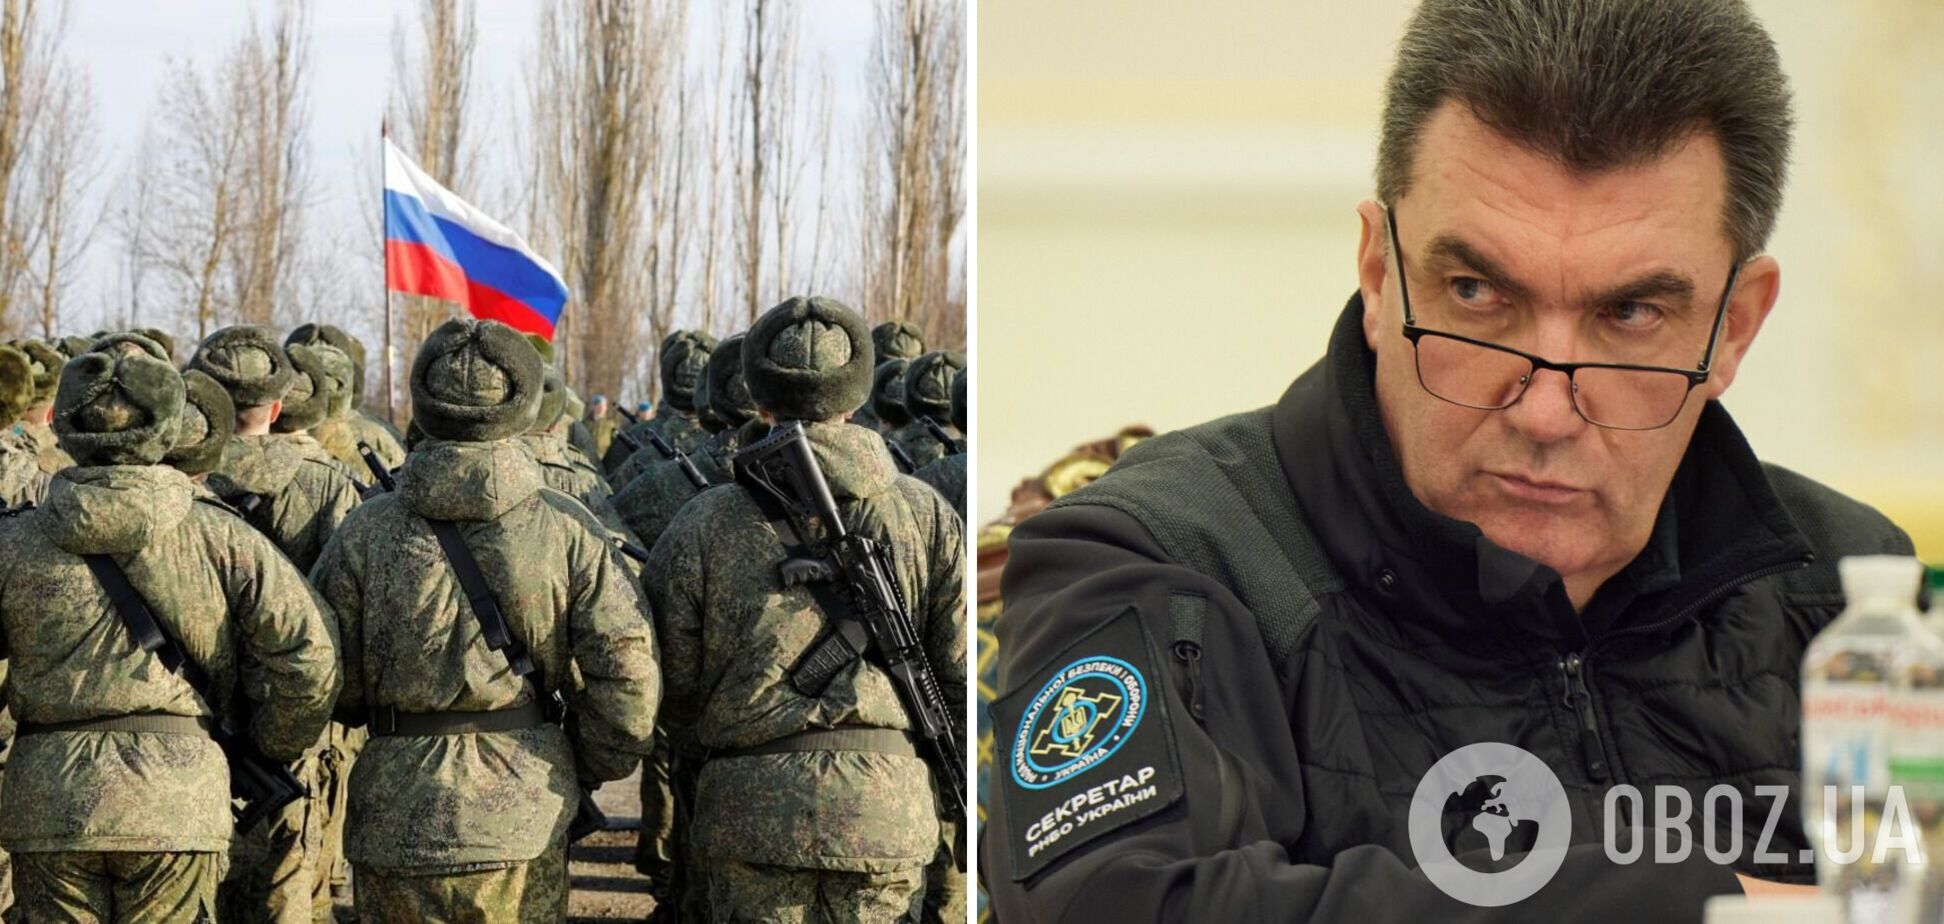 Данілов: армія РФ через санкції отримує зброю зниженої якості й точності